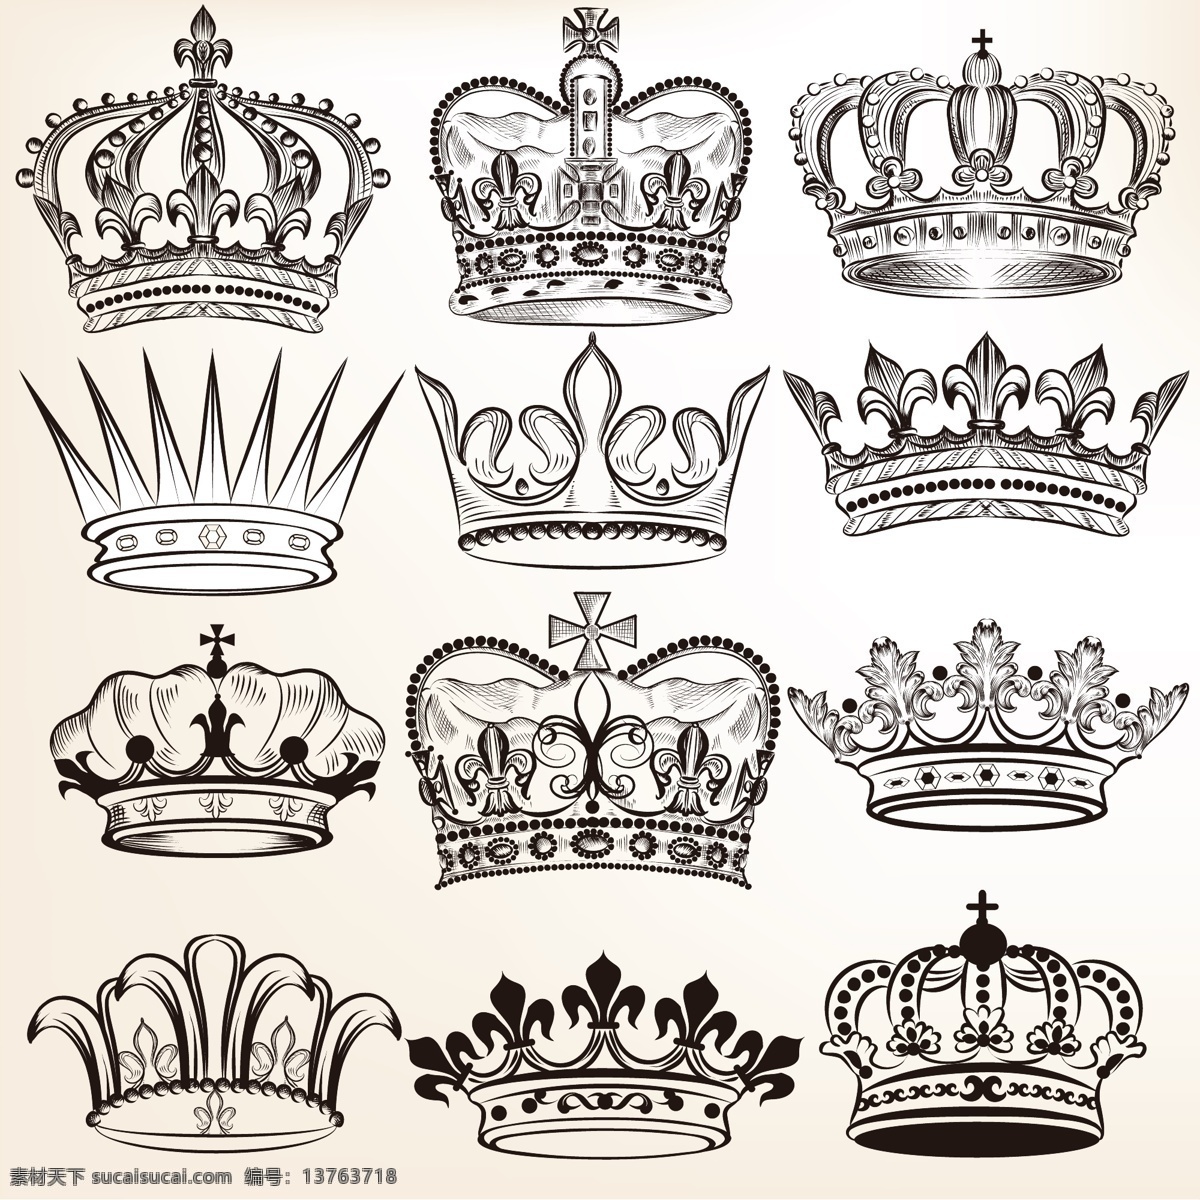 皇冠 欧式皇冠 头盔 权力 王冠 皇家 皇族 矢量 标志图标 网页小图标 白色